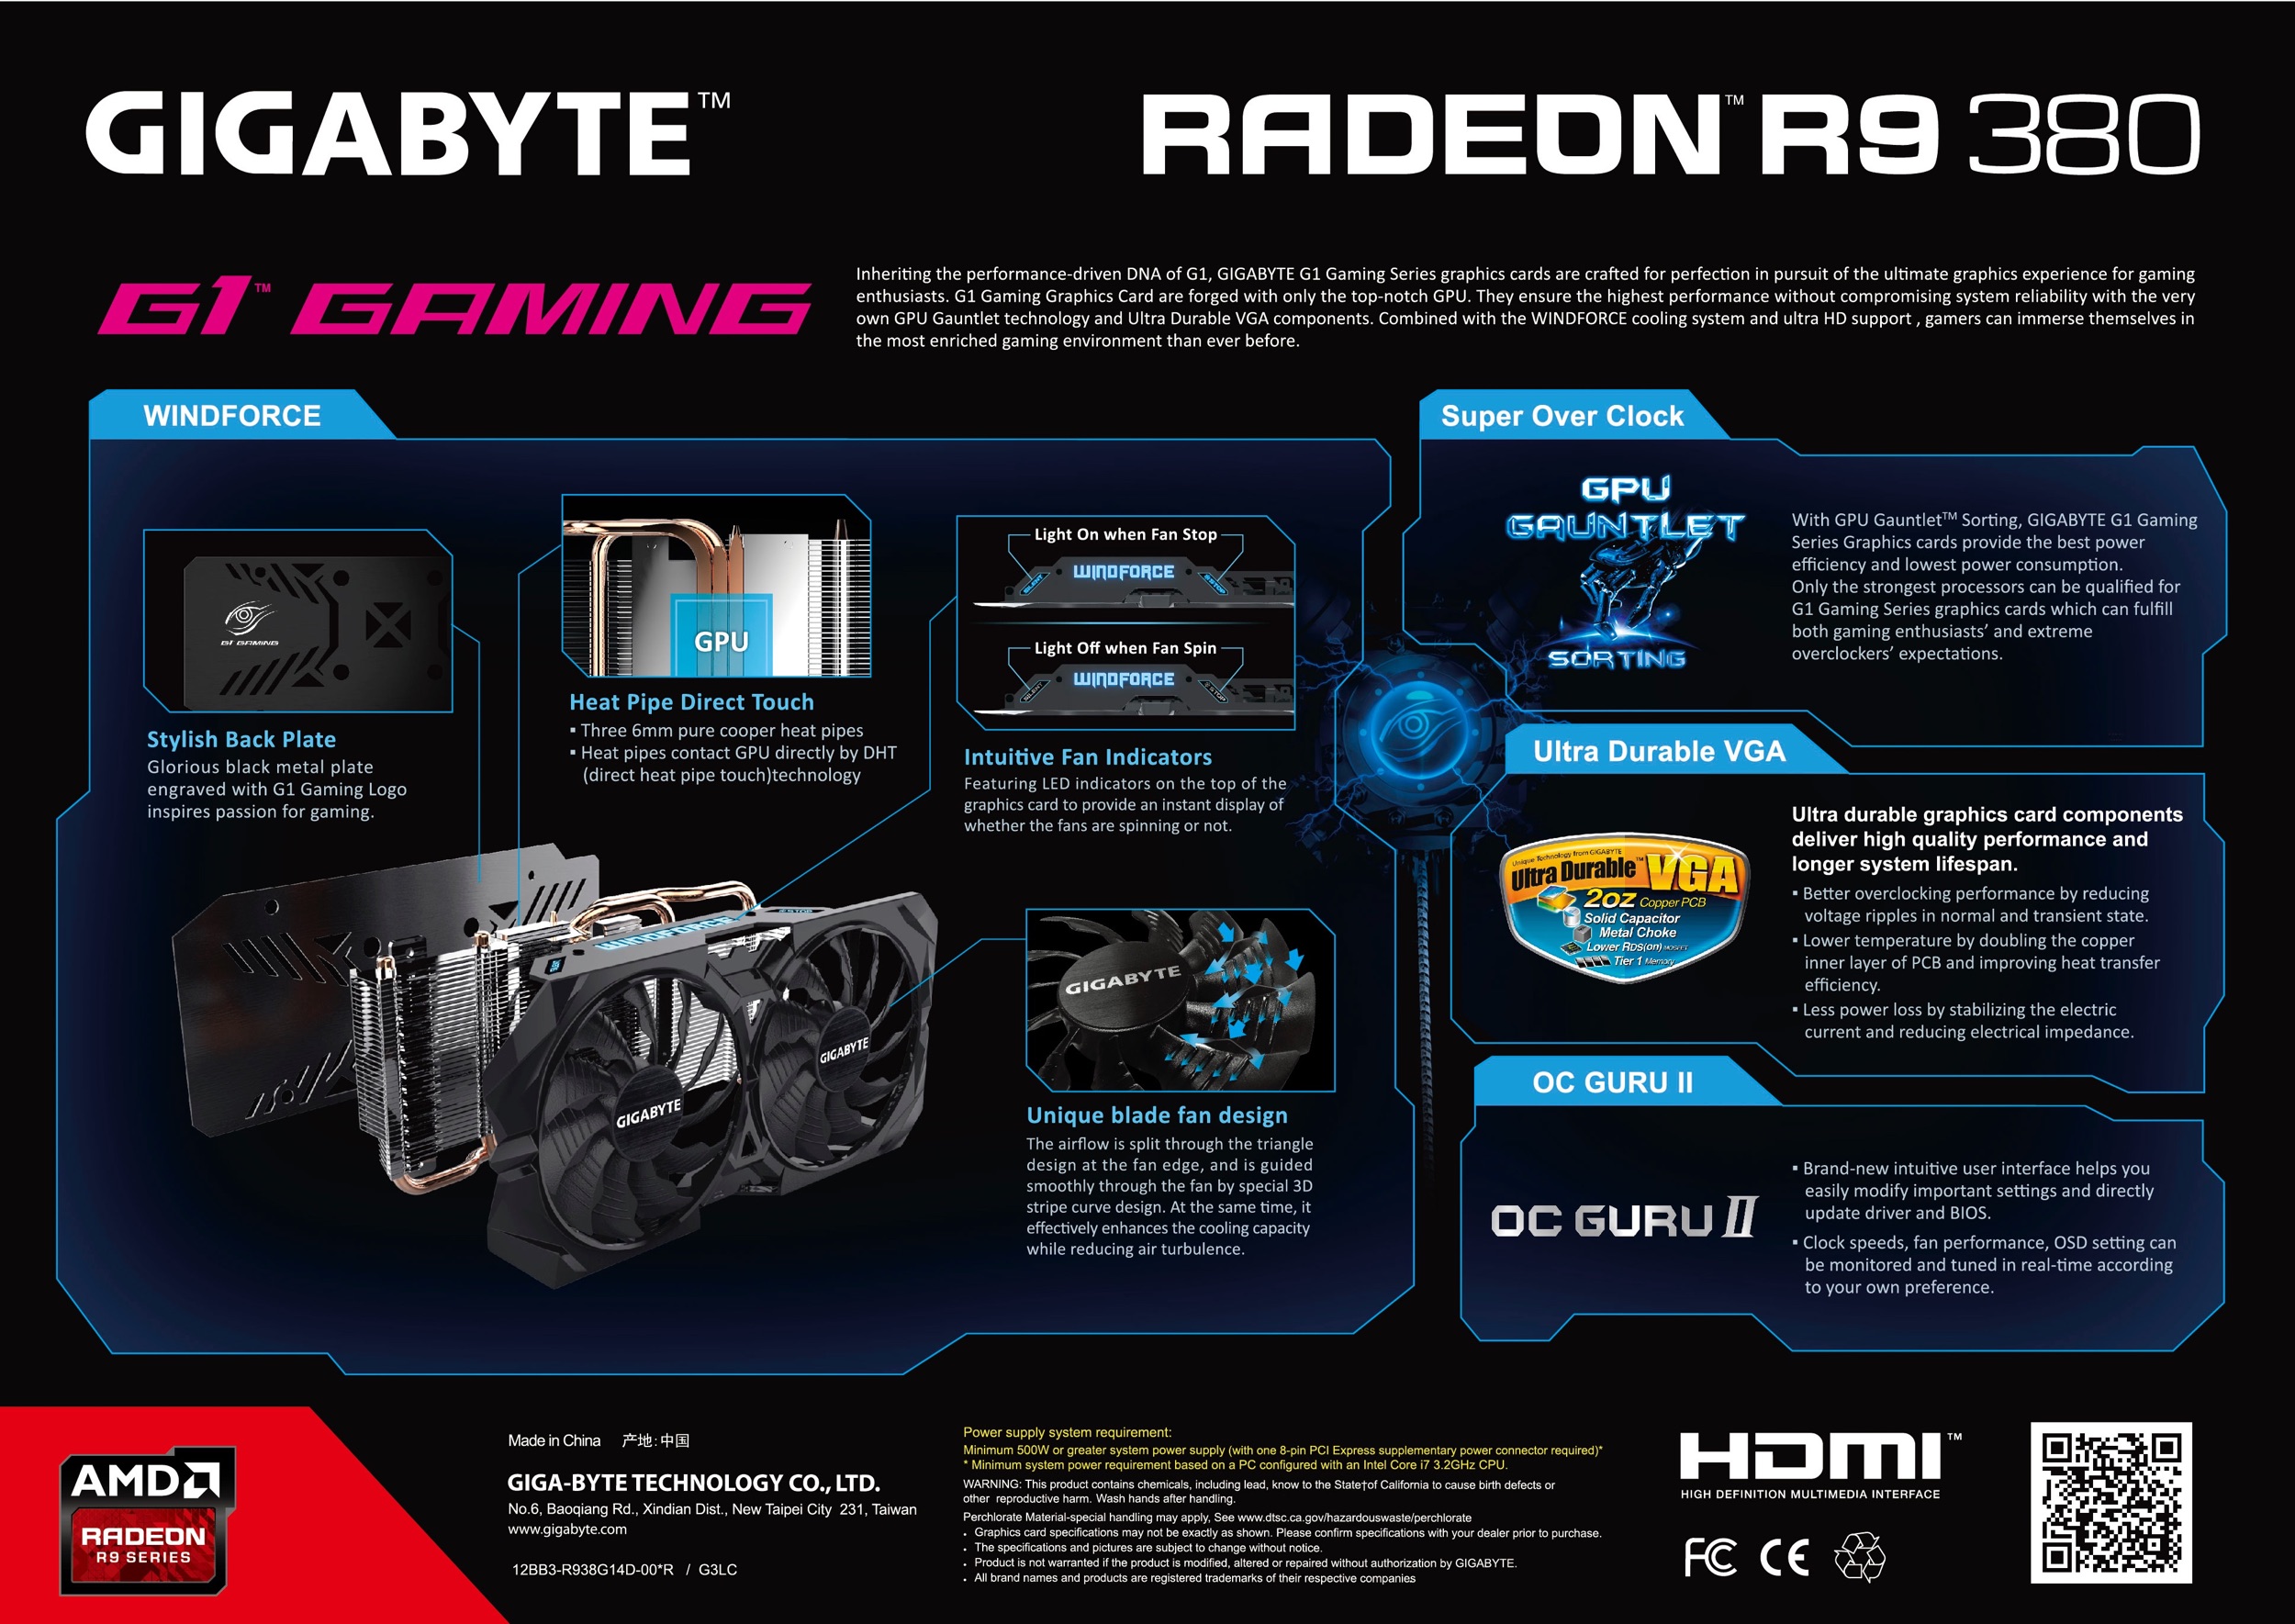 Immagine pubblicata in relazione al seguente contenuto: Slide leaked dedicata alla Radeon R9 380 G1 GAMING di GIGABYTE | Nome immagine: news22661_Gigabyte-Radeon-R9-380-WindForce-II_1.jpg